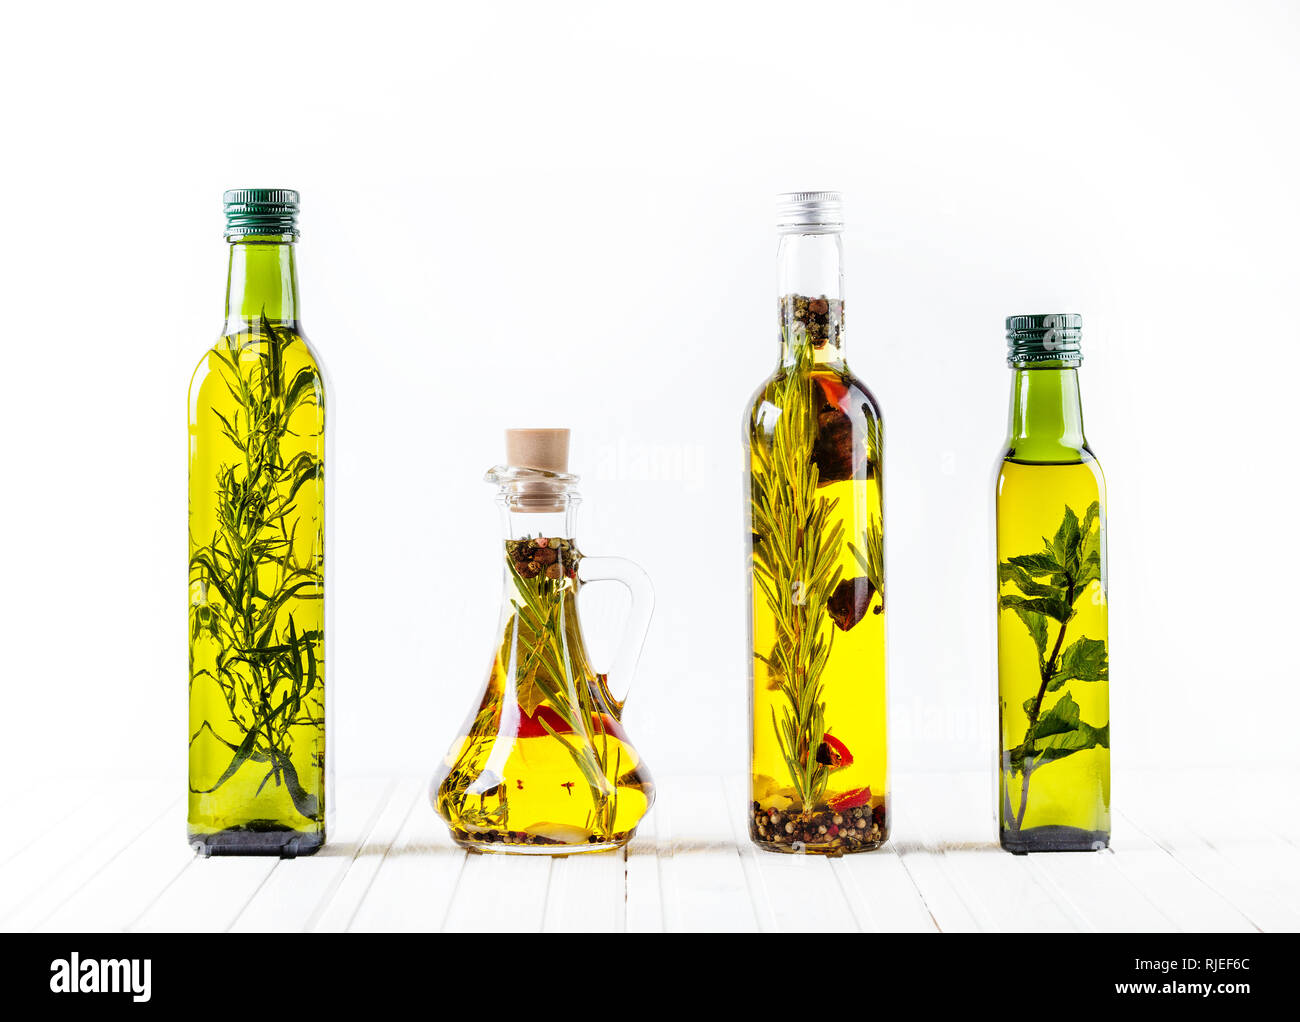 Botella de aceite casero con hierbas y especias sobre fondo blanco. Espacio libre para el texto. Foto de stock